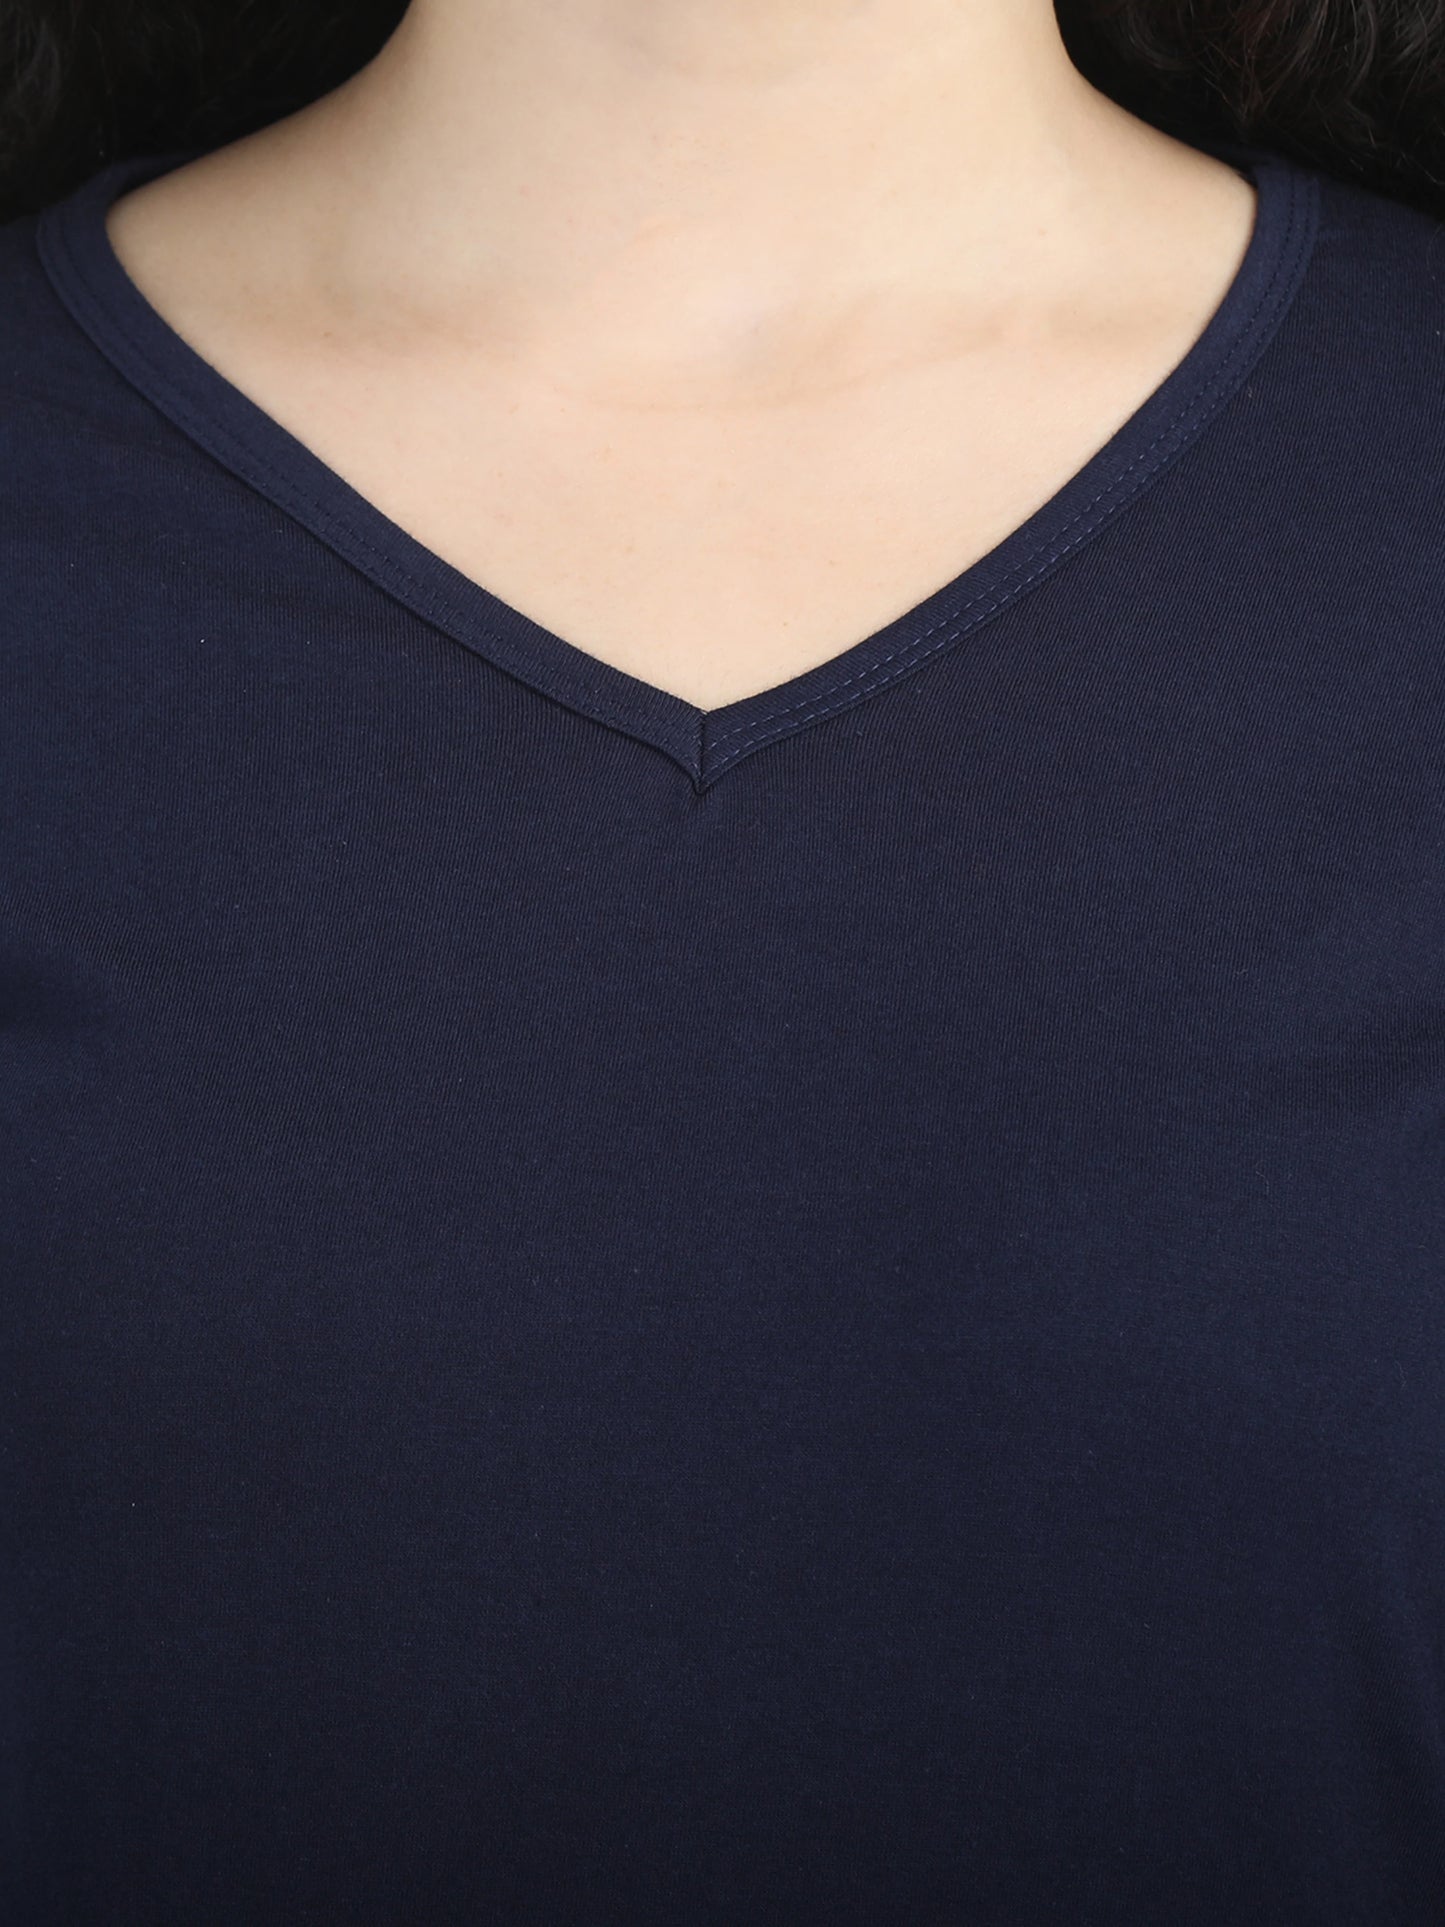 Women's Cotton Plain V Neck Full Sleeve Navy Blue Color T-Shirt